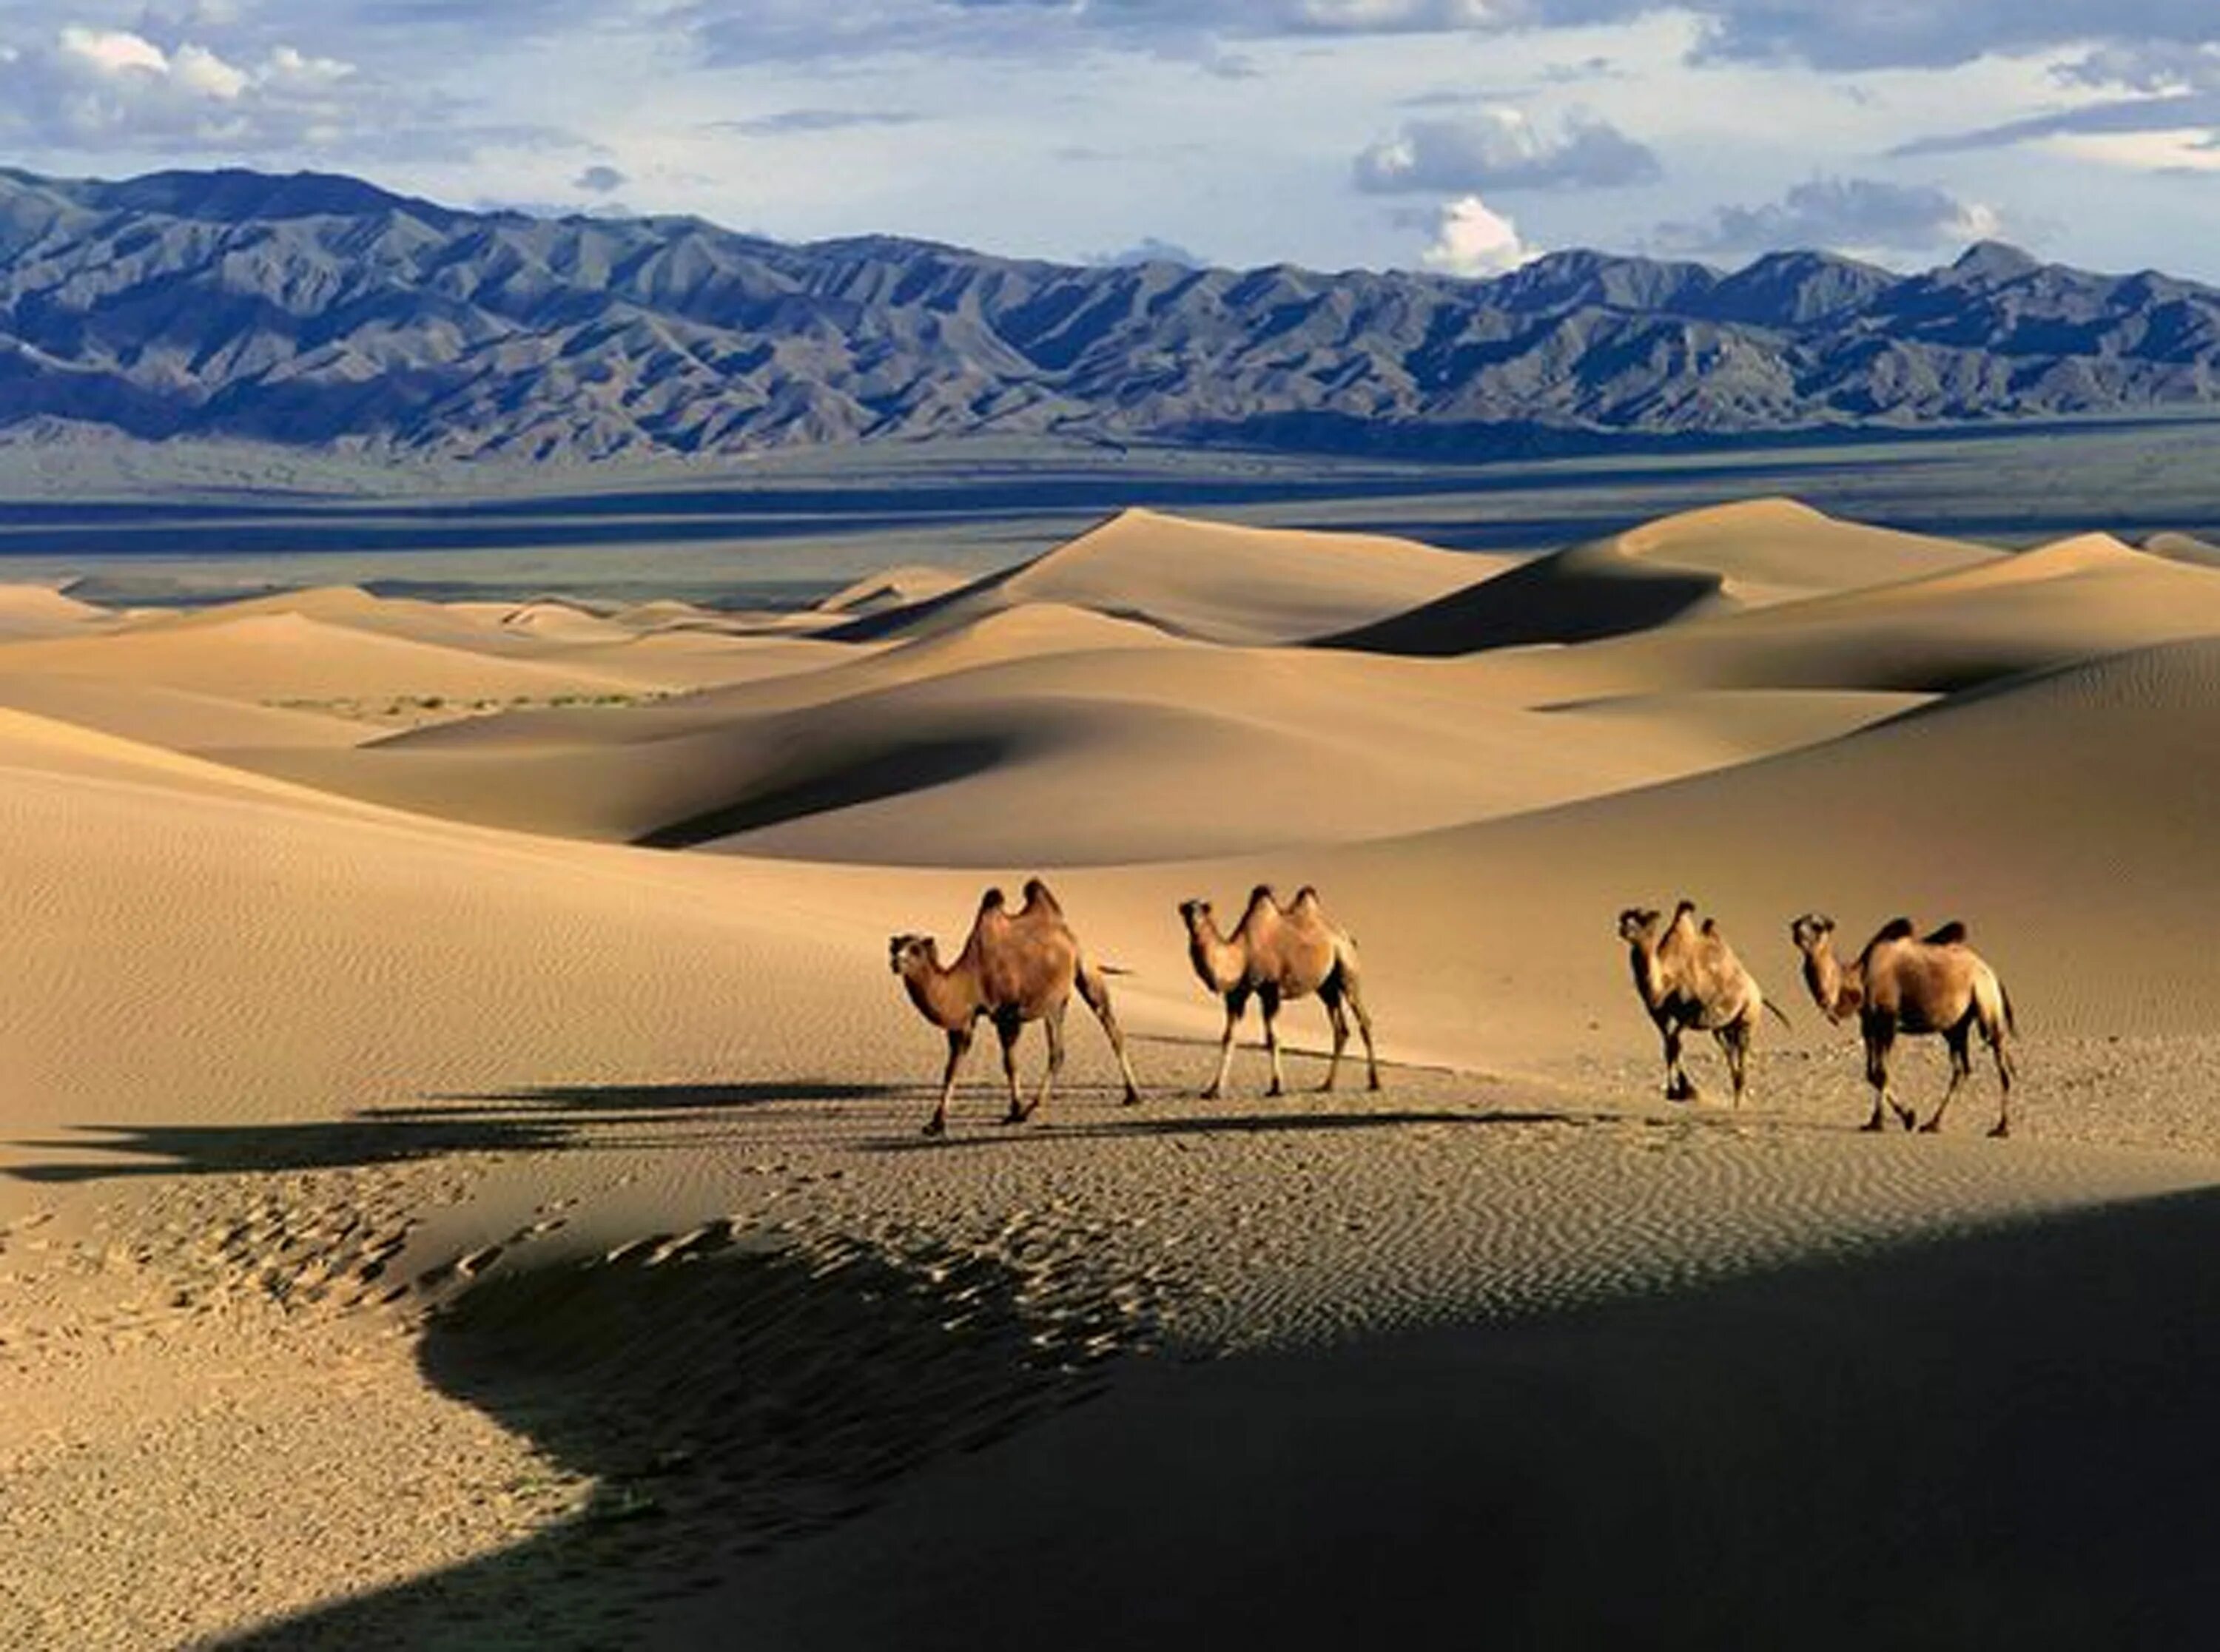 Гоби это пустыня. Монголия Гоби. Монгольская пустыня Гоби. Природа Монголии - пустыня Гоби. Монголия пустыня Гоби 2023.